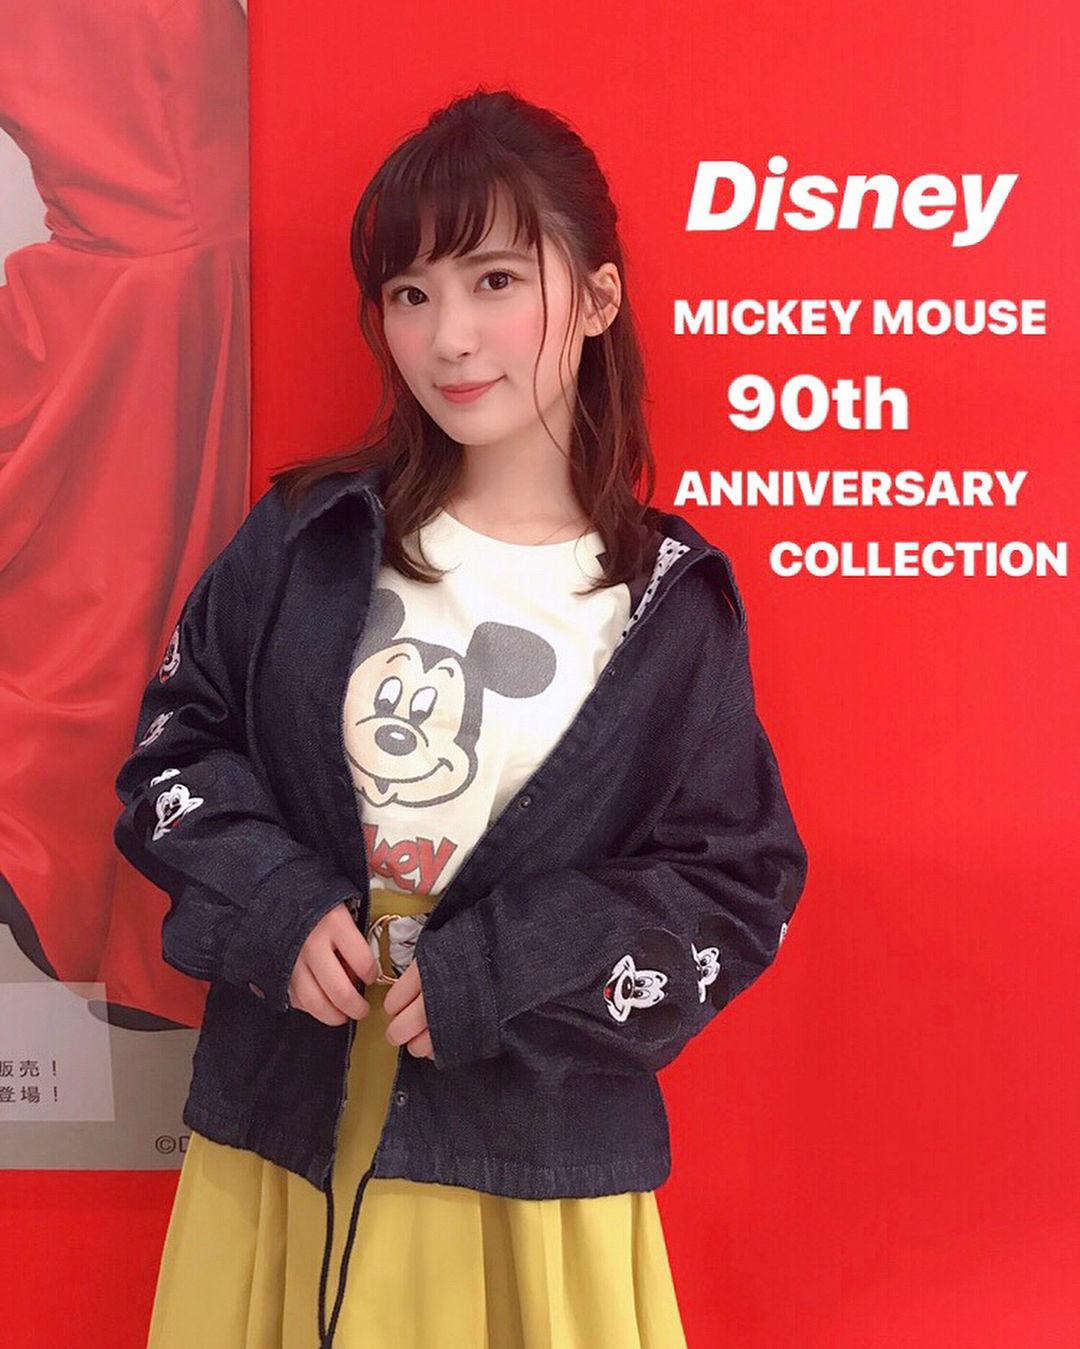 伊藤奈月 たくさんのミッキーマウスに 包まれて 笑 ラフォーレ原宿にて 本日8 23 木 9 24 月 祝 に 期間限定開催されている Disney M Moe Zine